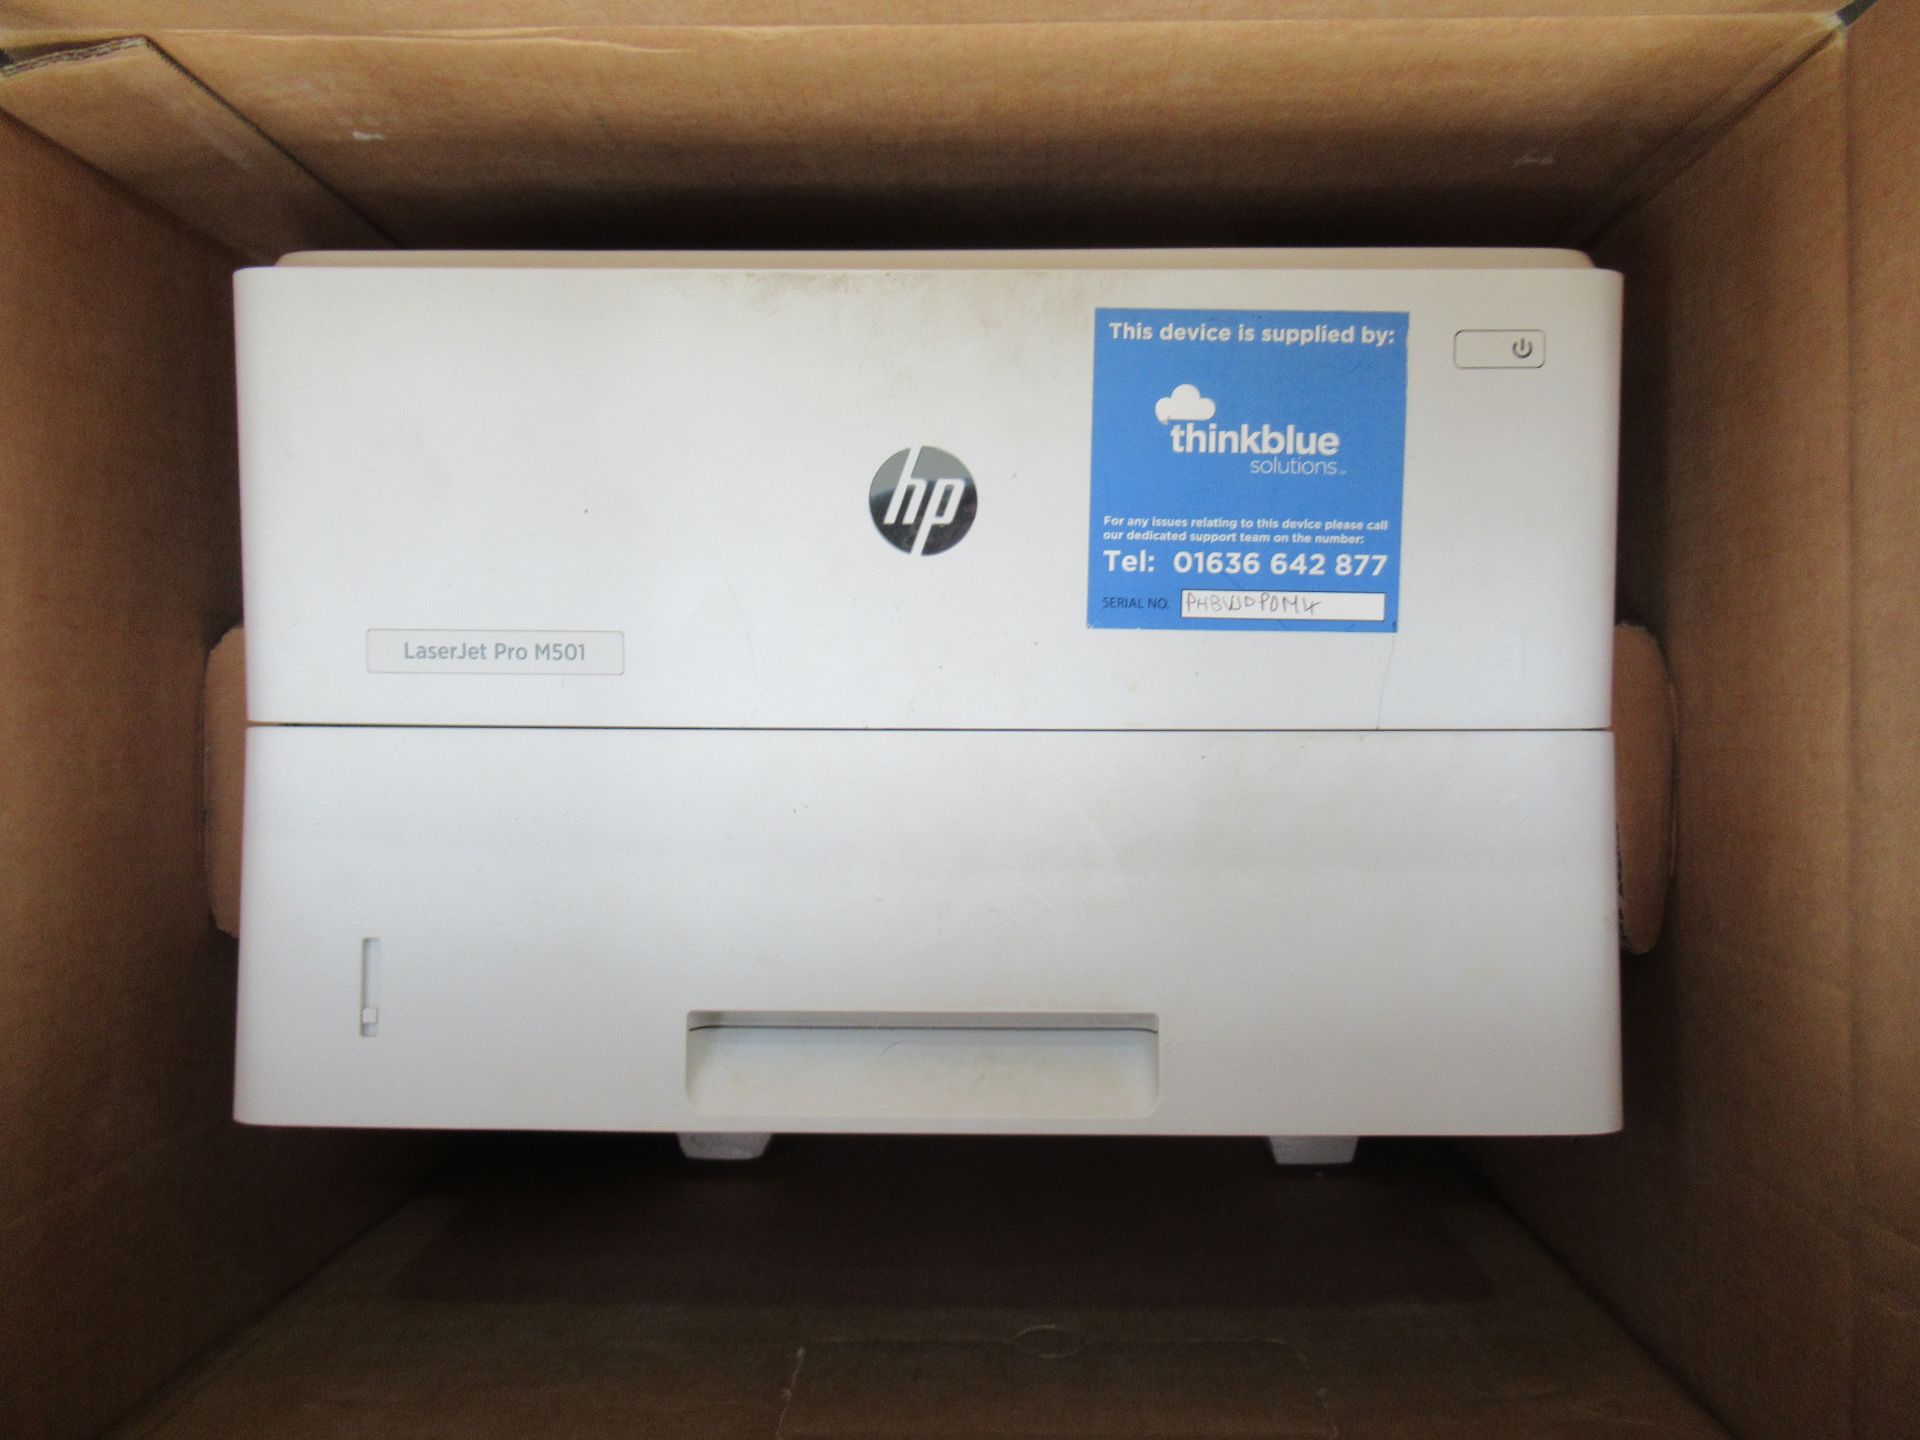 HP Laserjet Pro M501 printer - Image 2 of 3